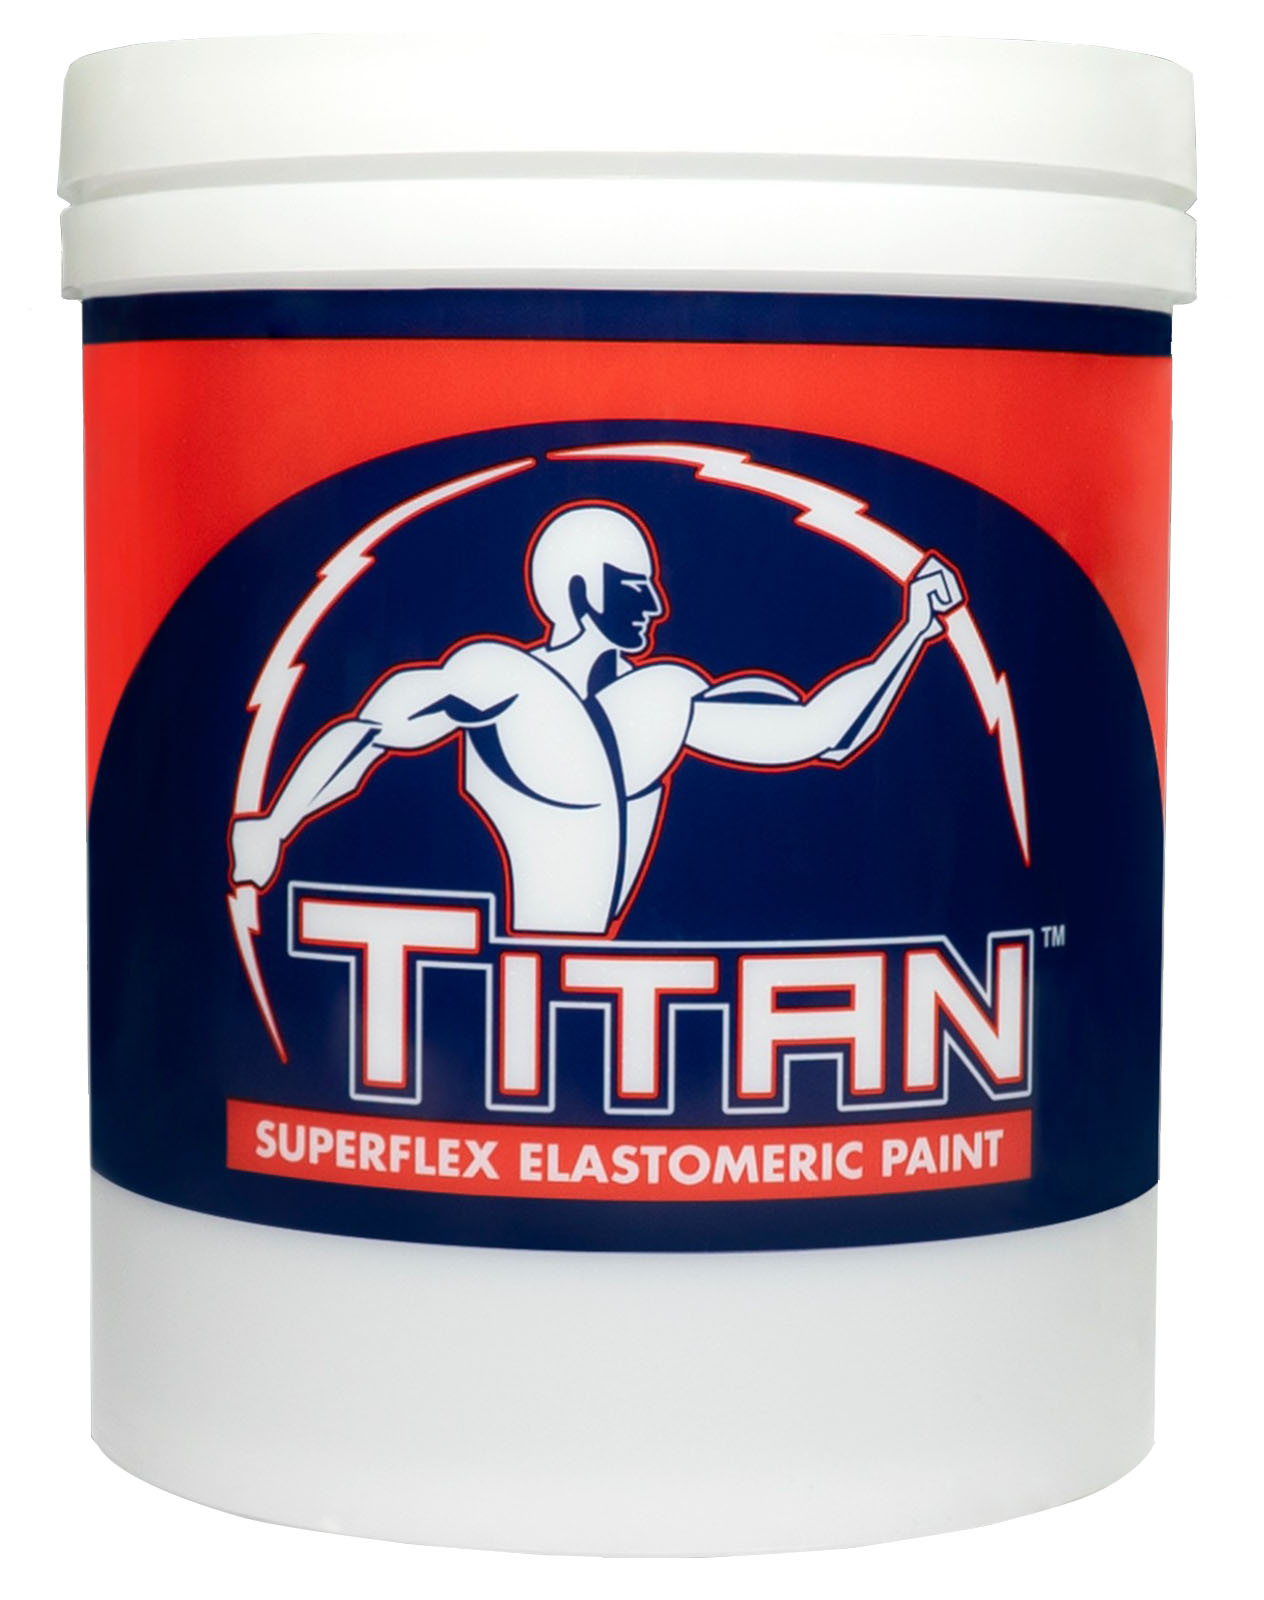 Titan Superflex Elastomeric Paint | MyBoysen